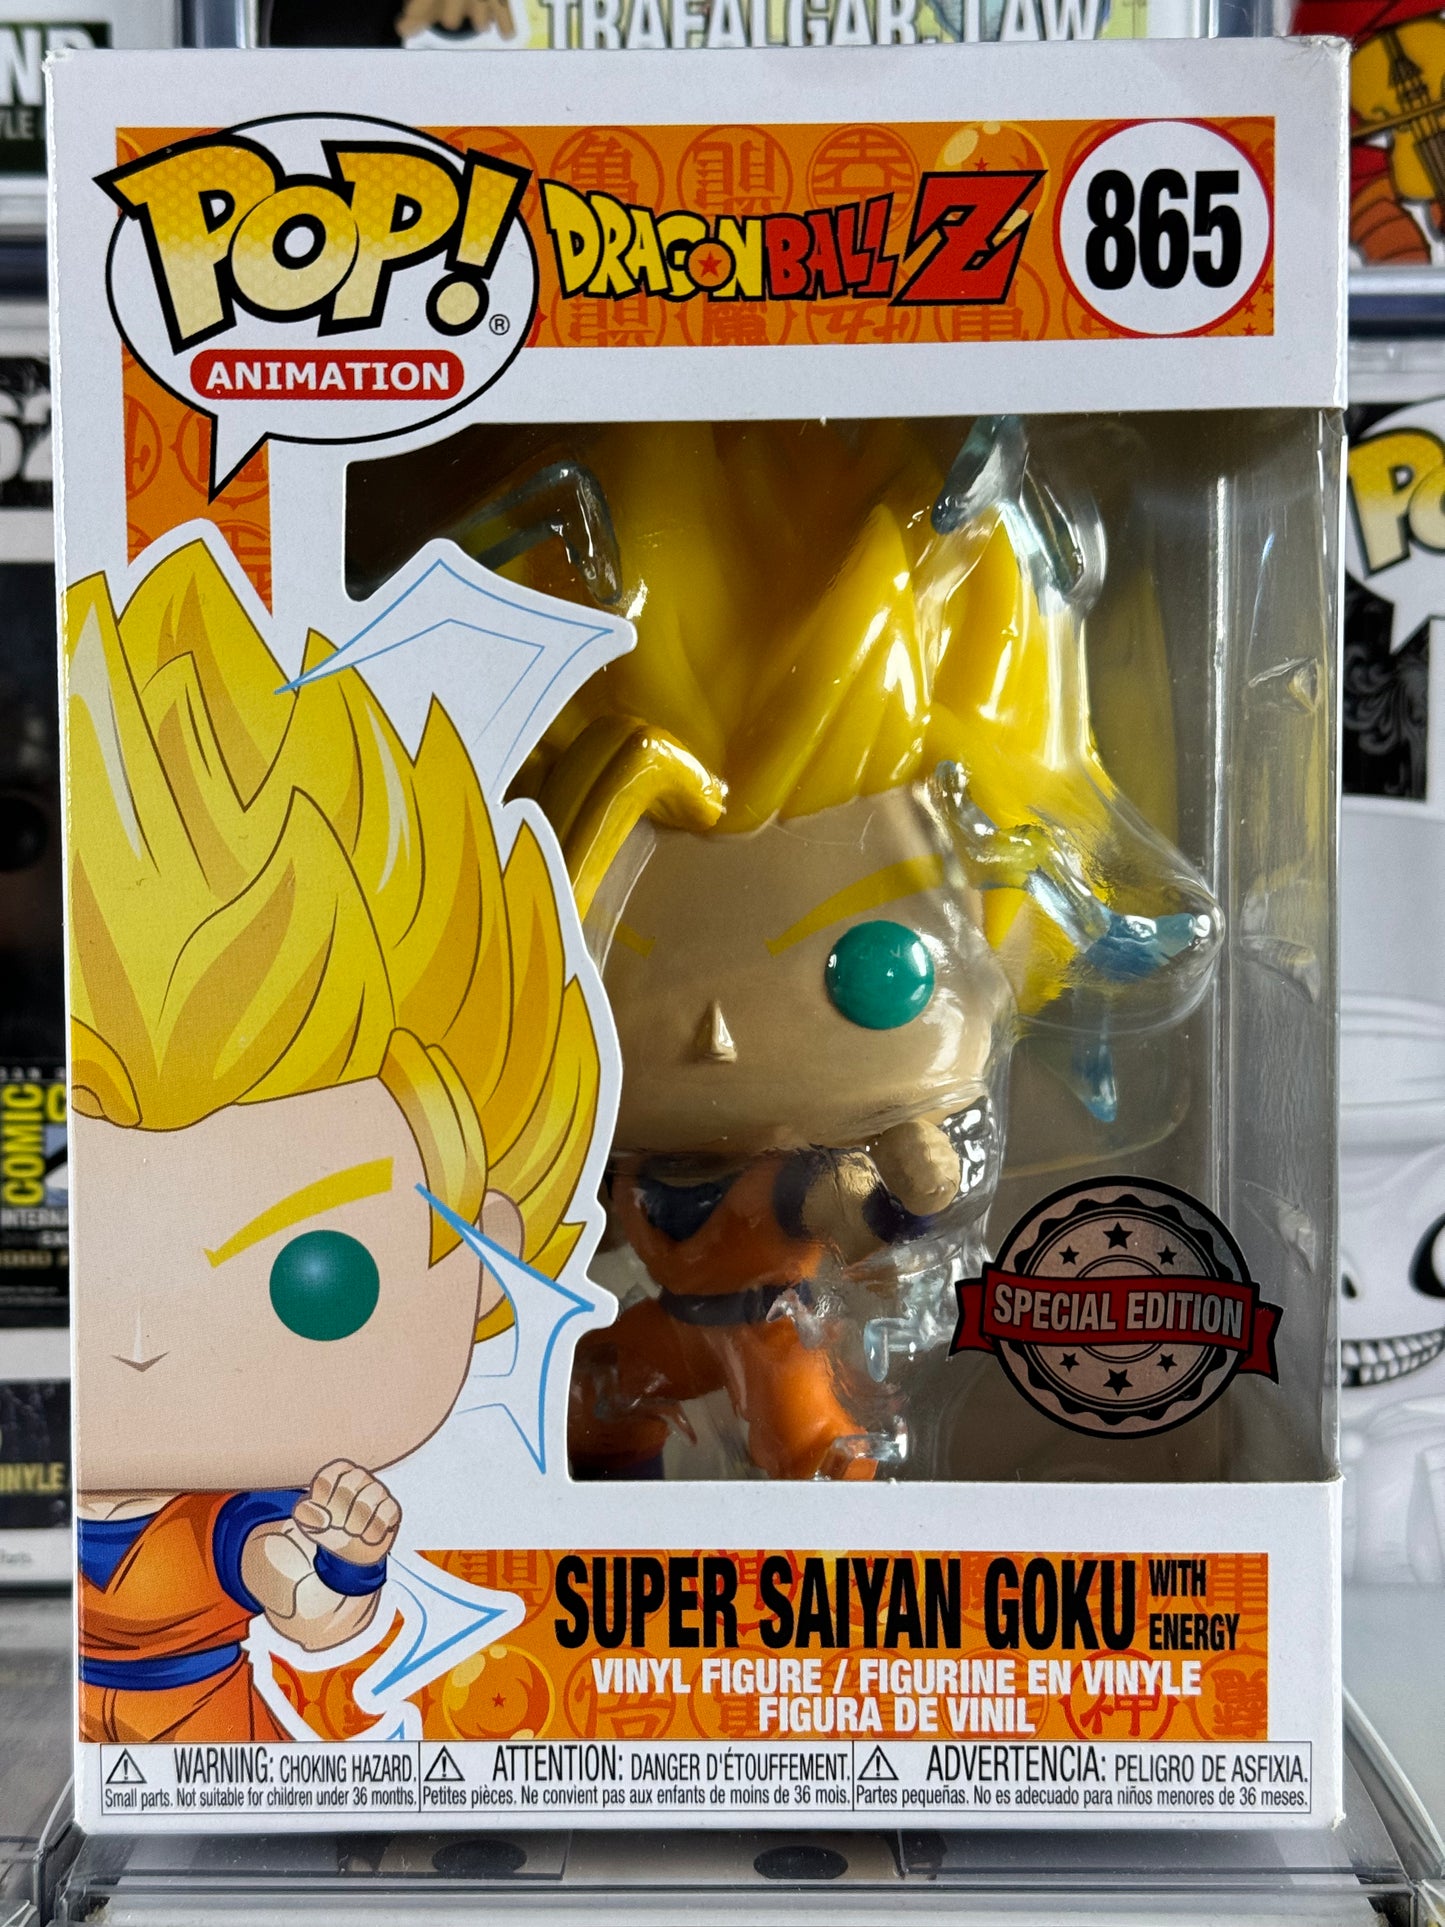 Dragonball Z - Super Saiyan Goku With Energy (865)